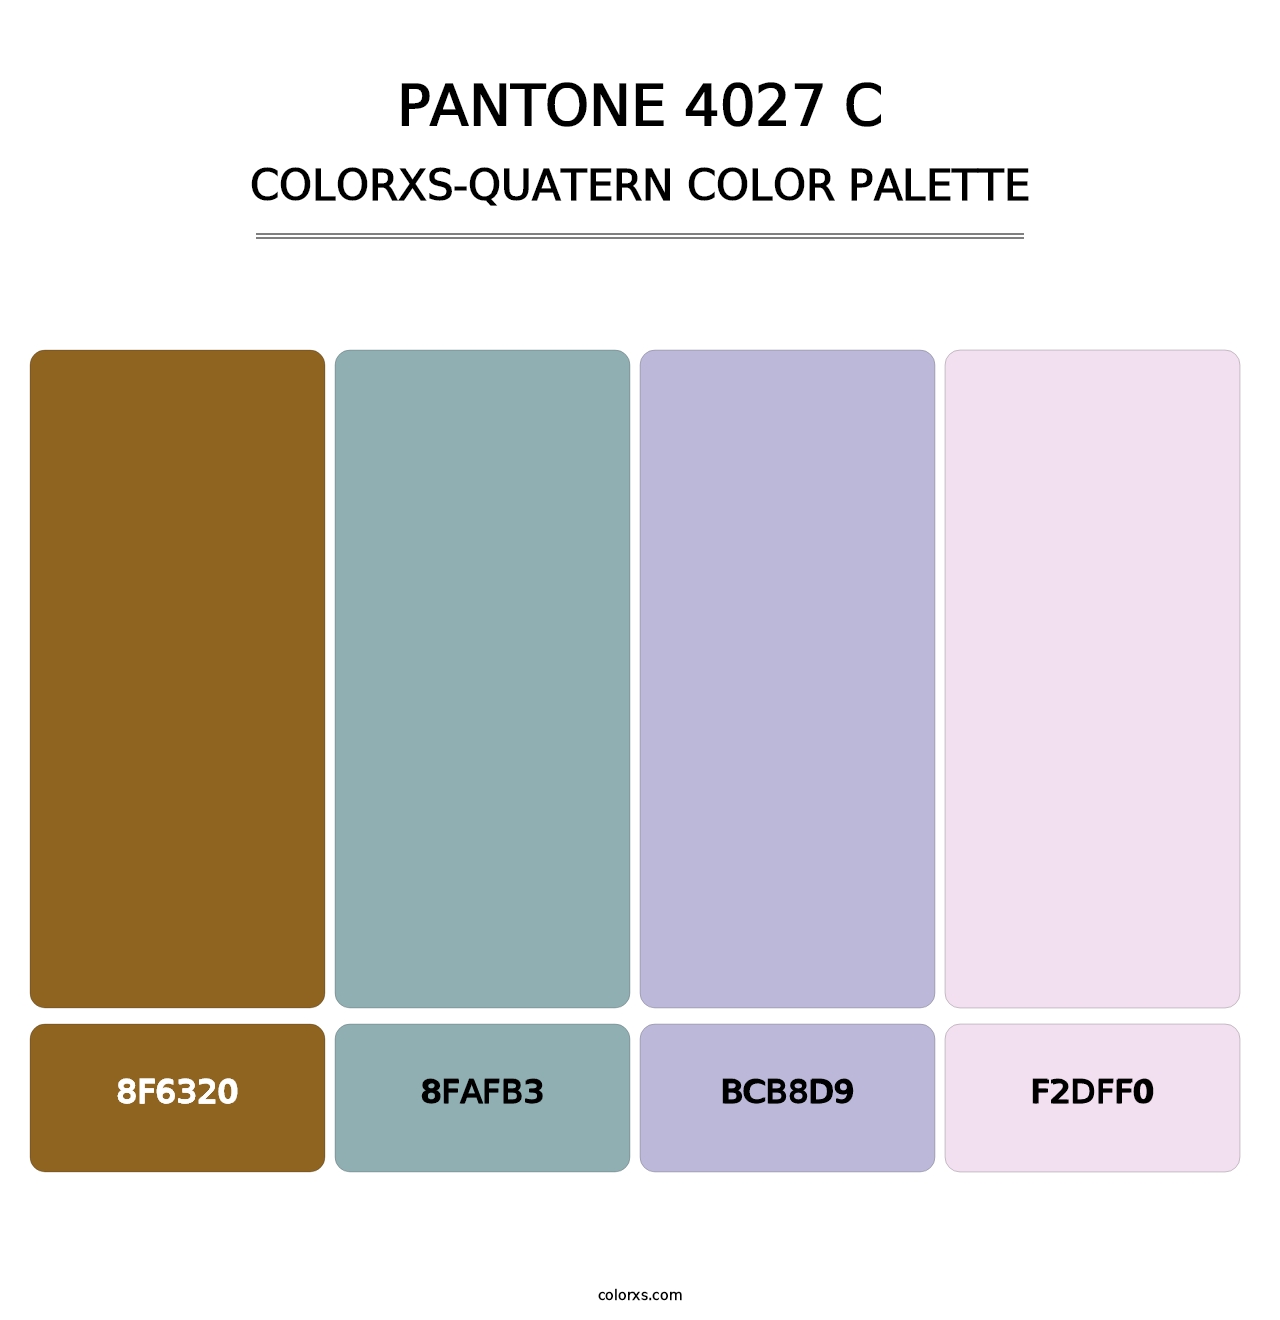 PANTONE 4027 C - Colorxs Quatern Palette